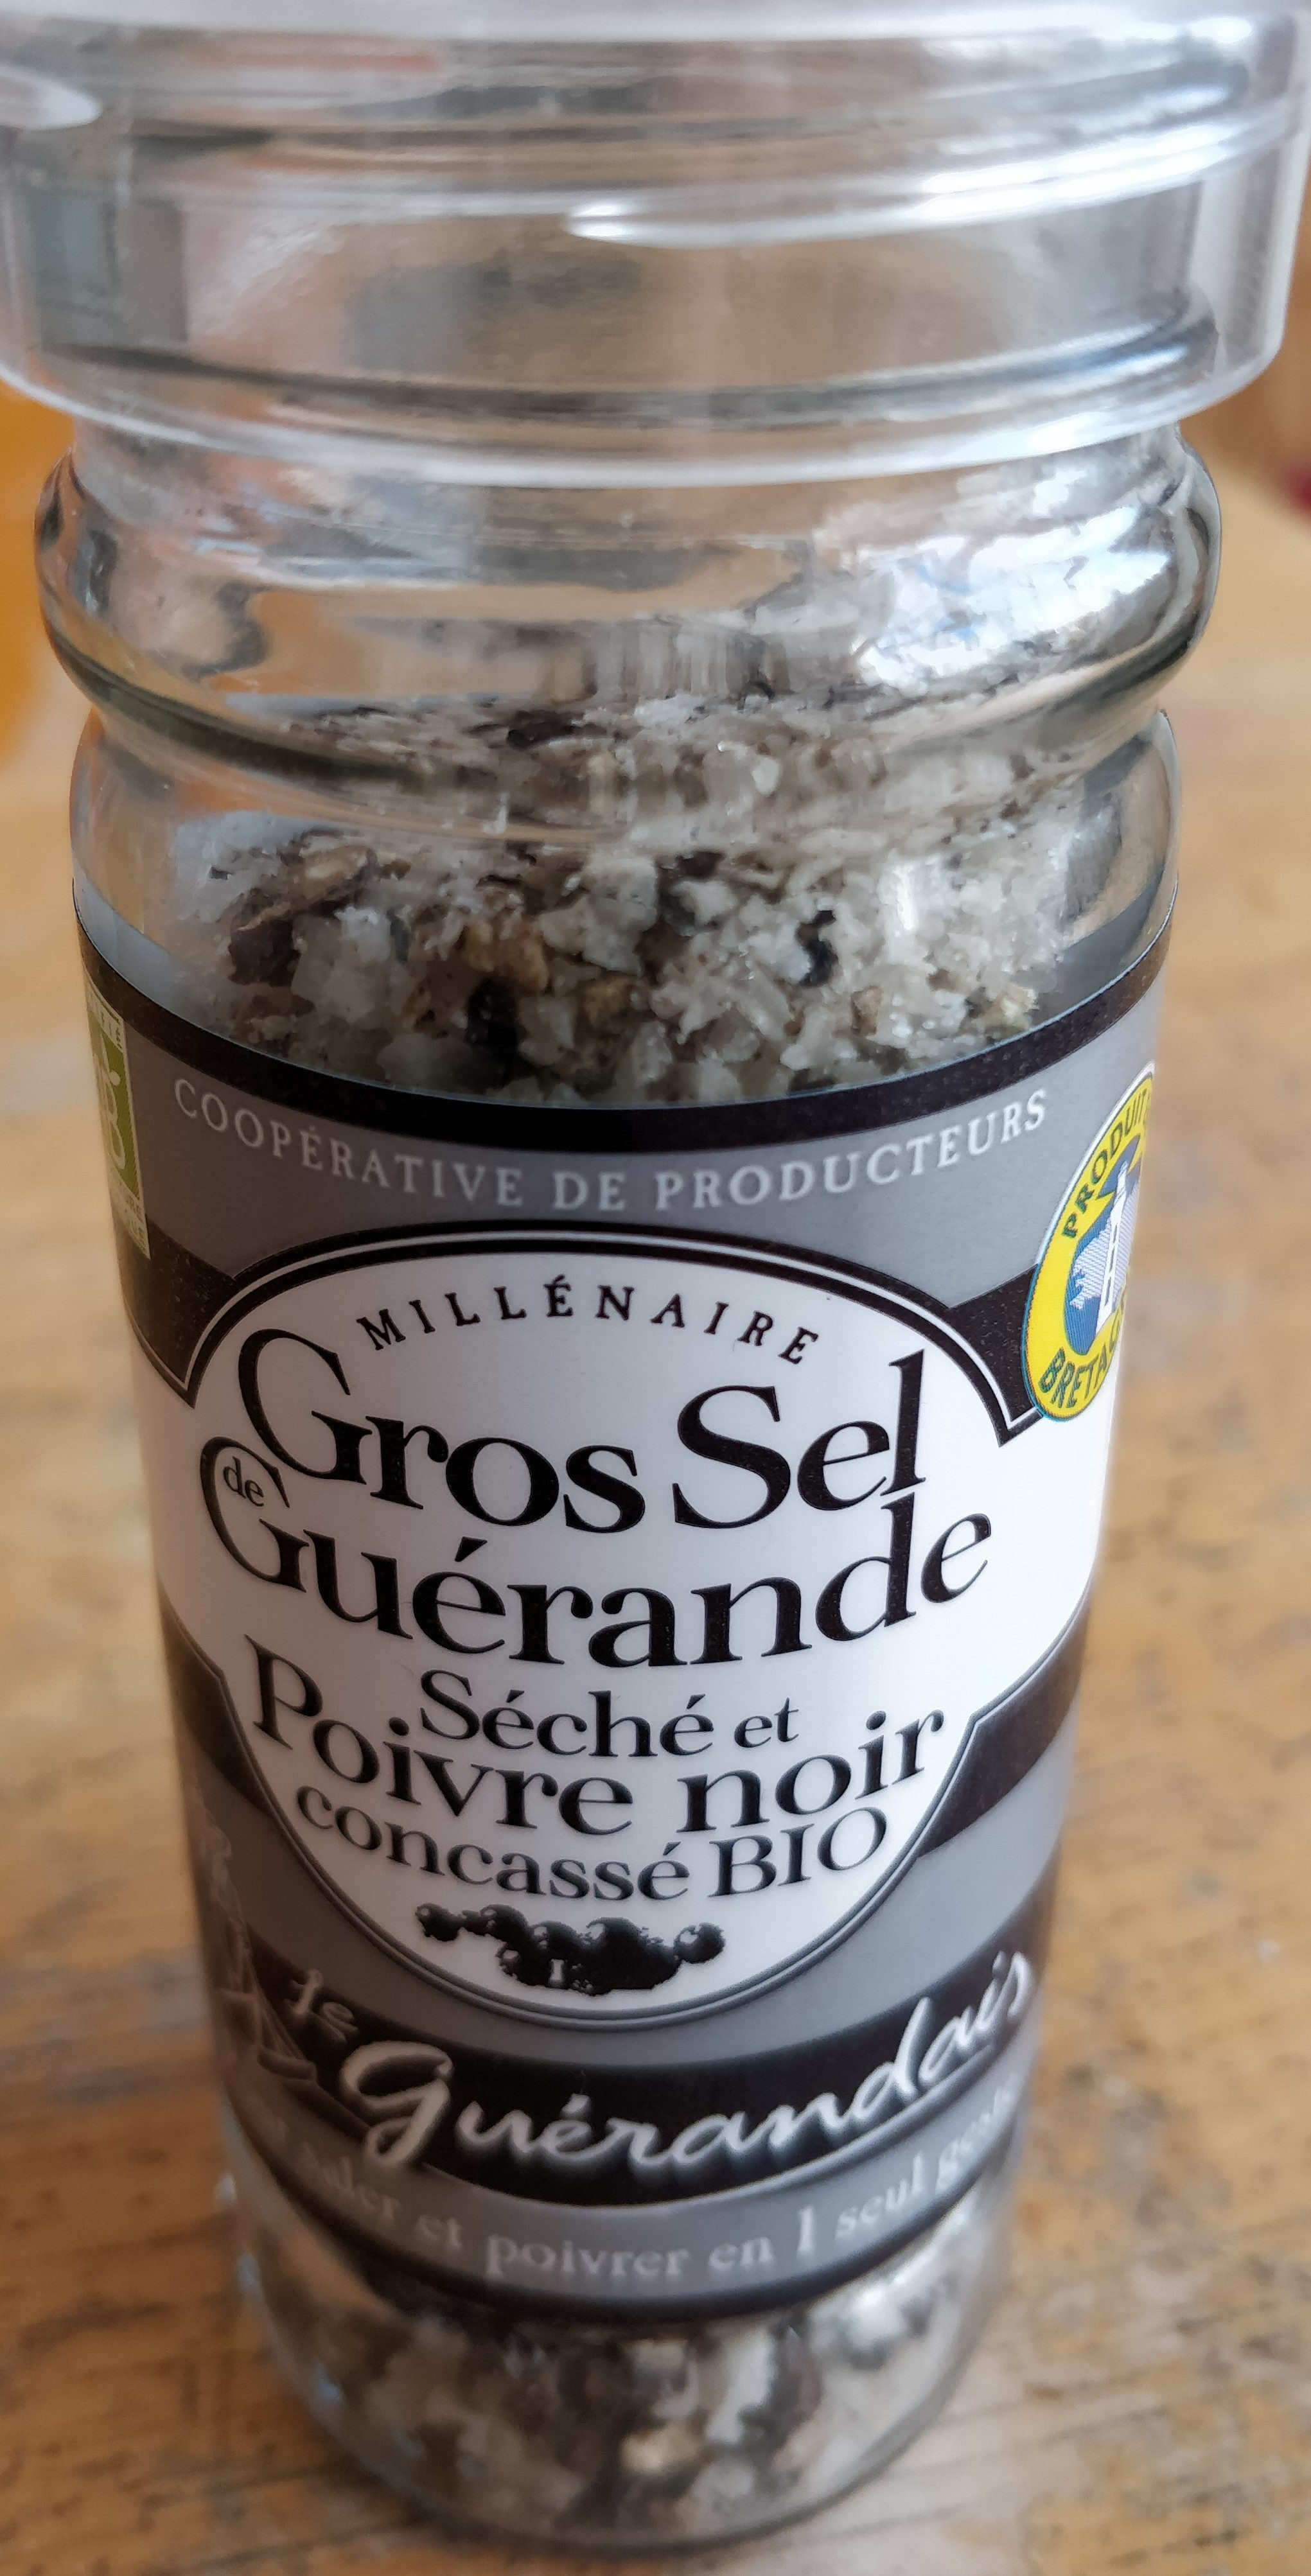 Gros sel de Guérande séché et poivre noir concassé bio - المكونات - fr